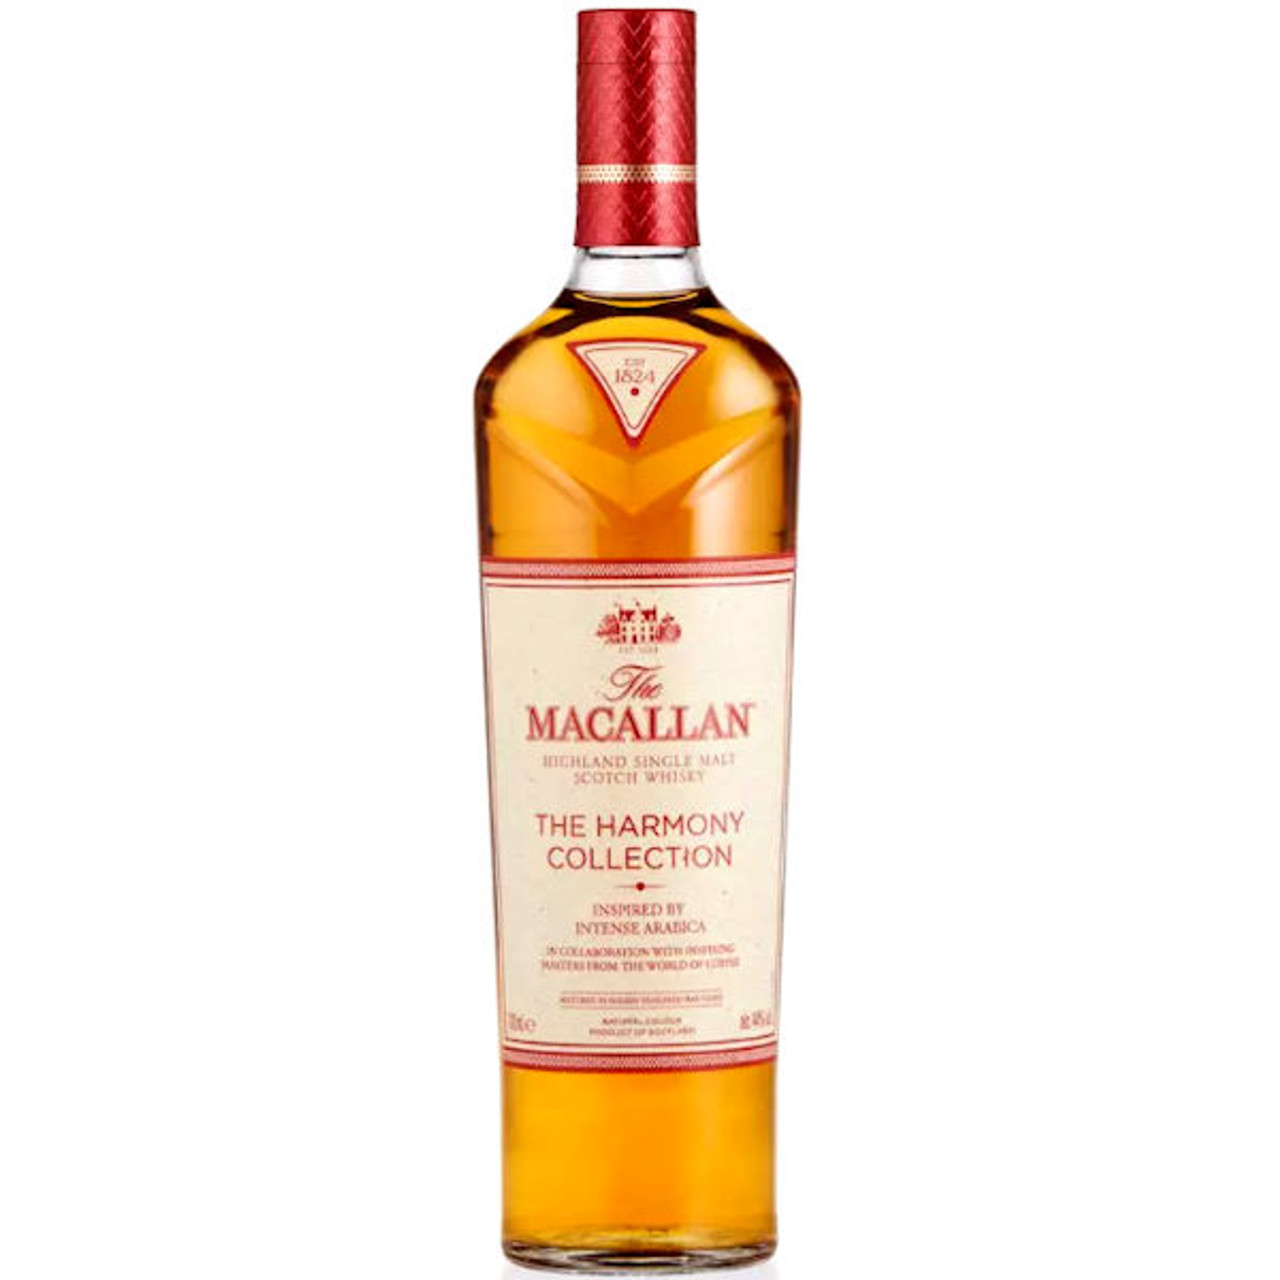 Best Single Malt Scotch Whisky for 2022